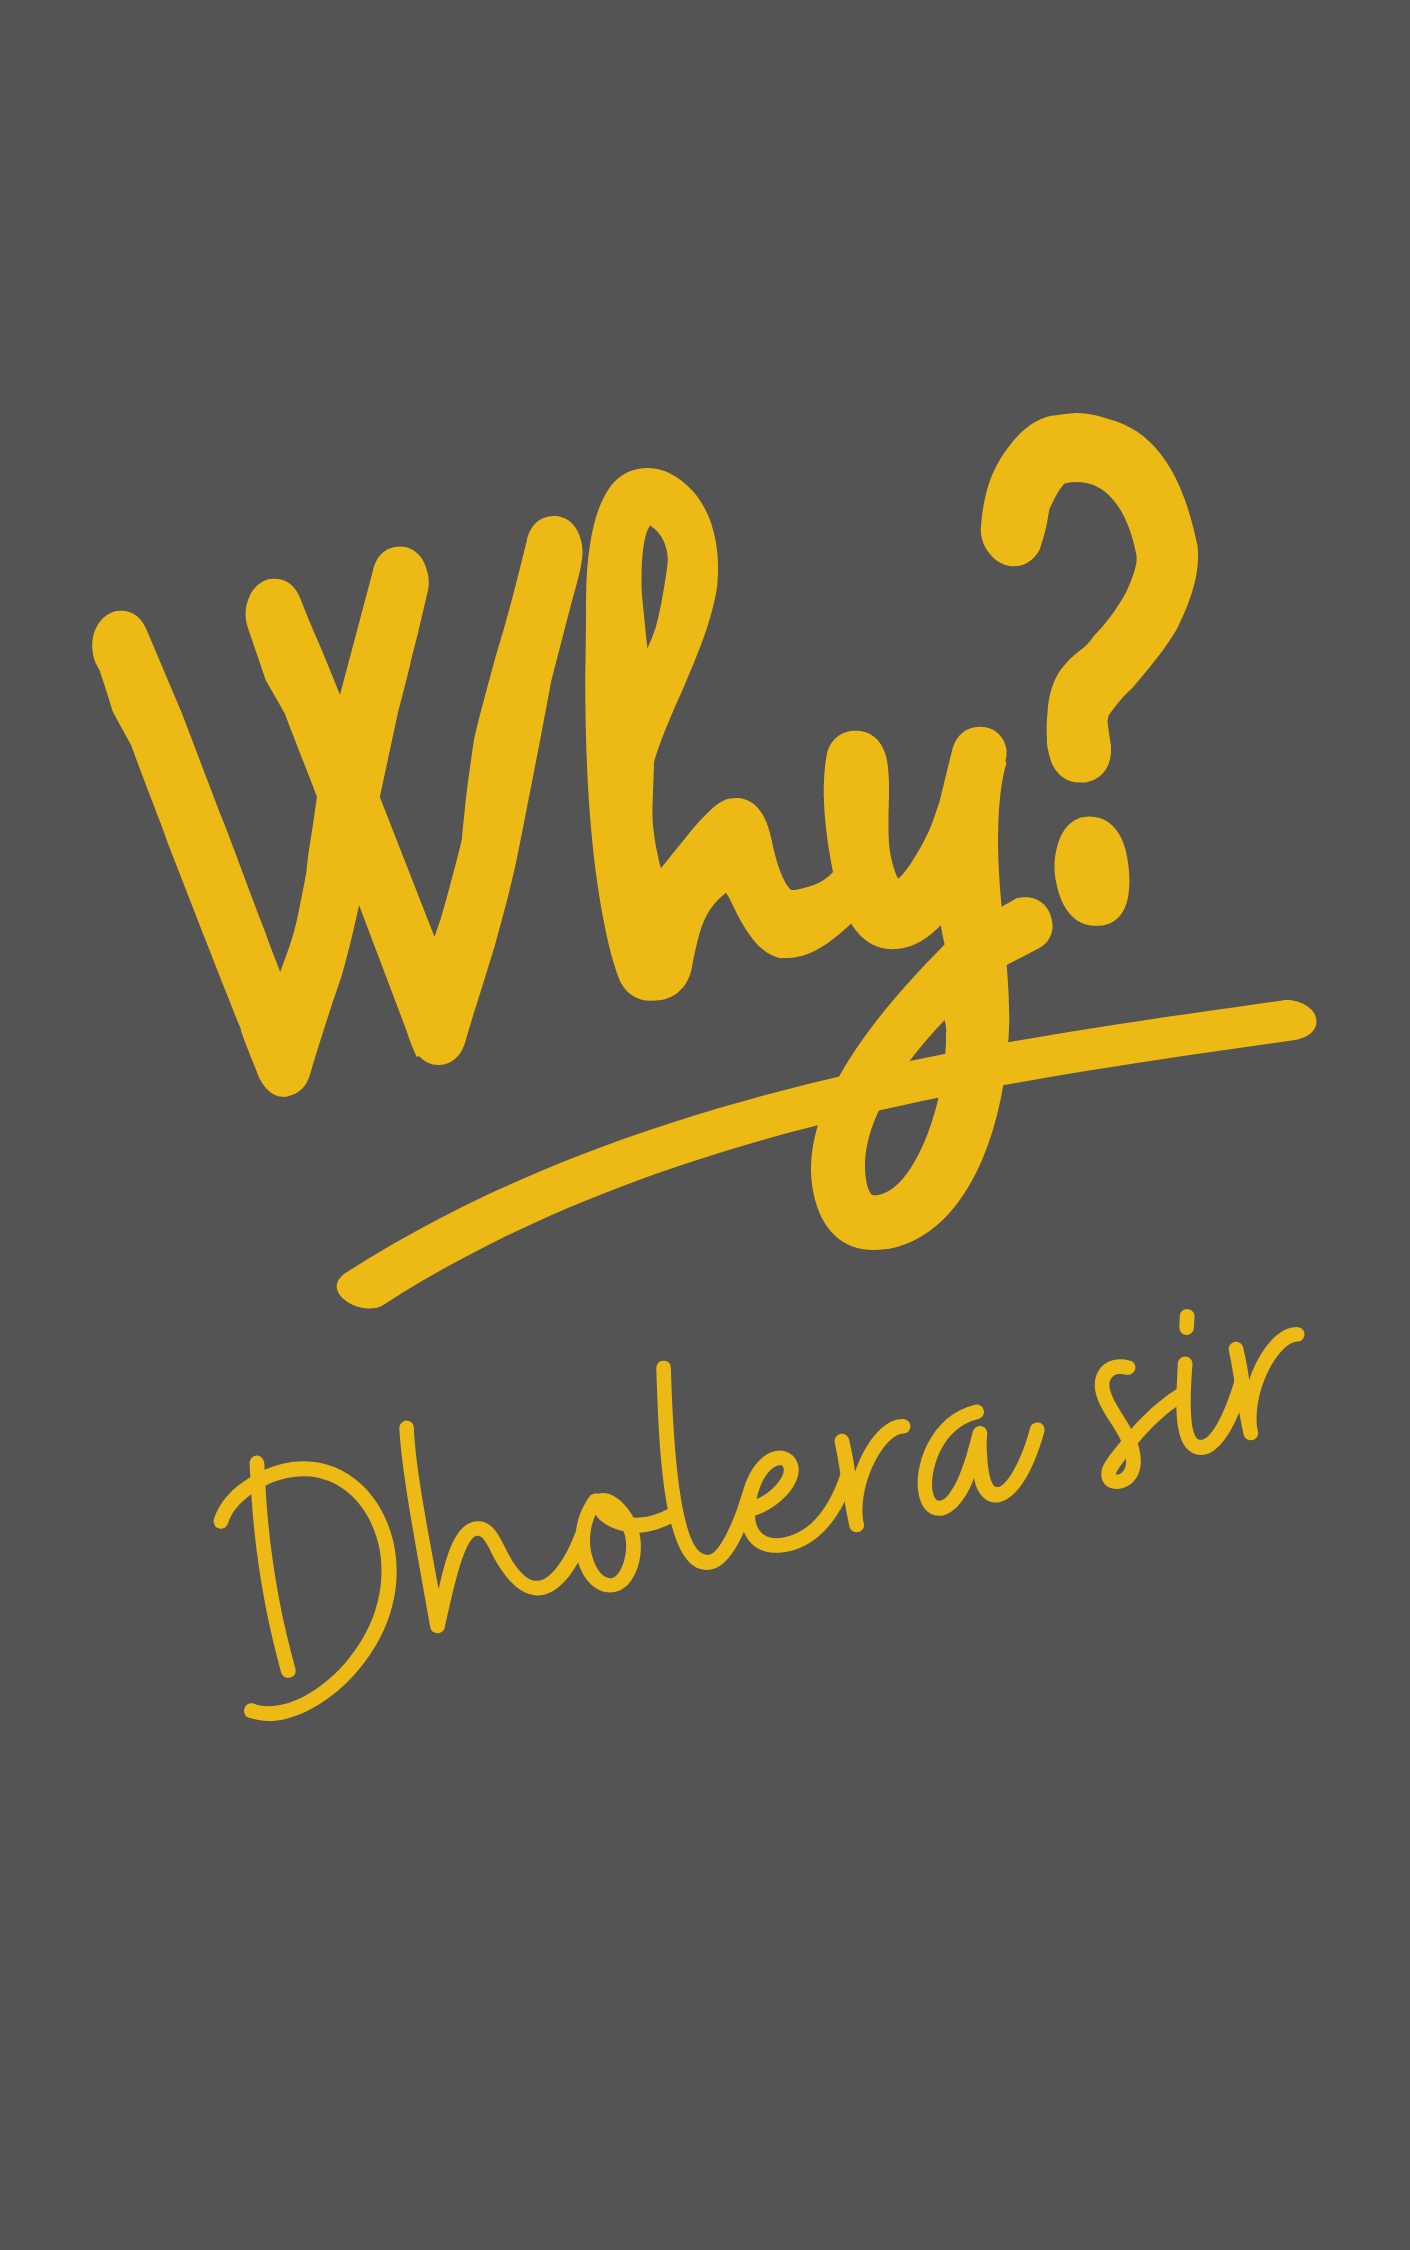 Dholera sir